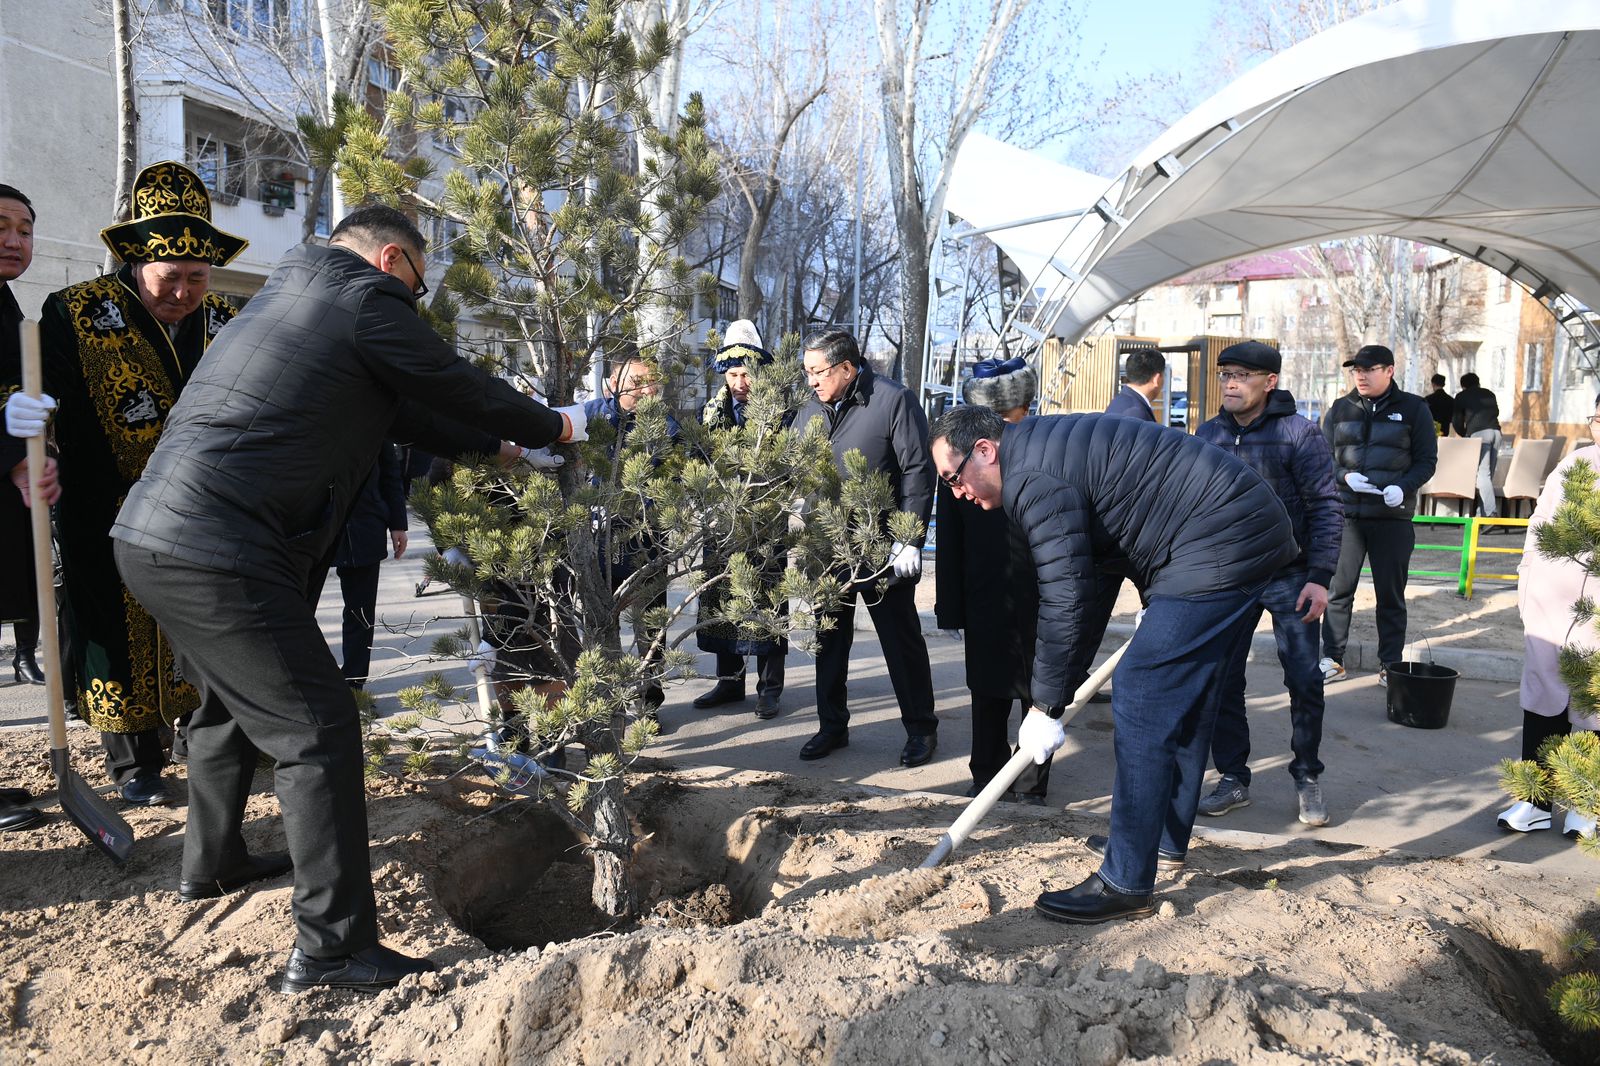 Алматы облысында Наурыз мерекесі кең көлемде атап өтілді